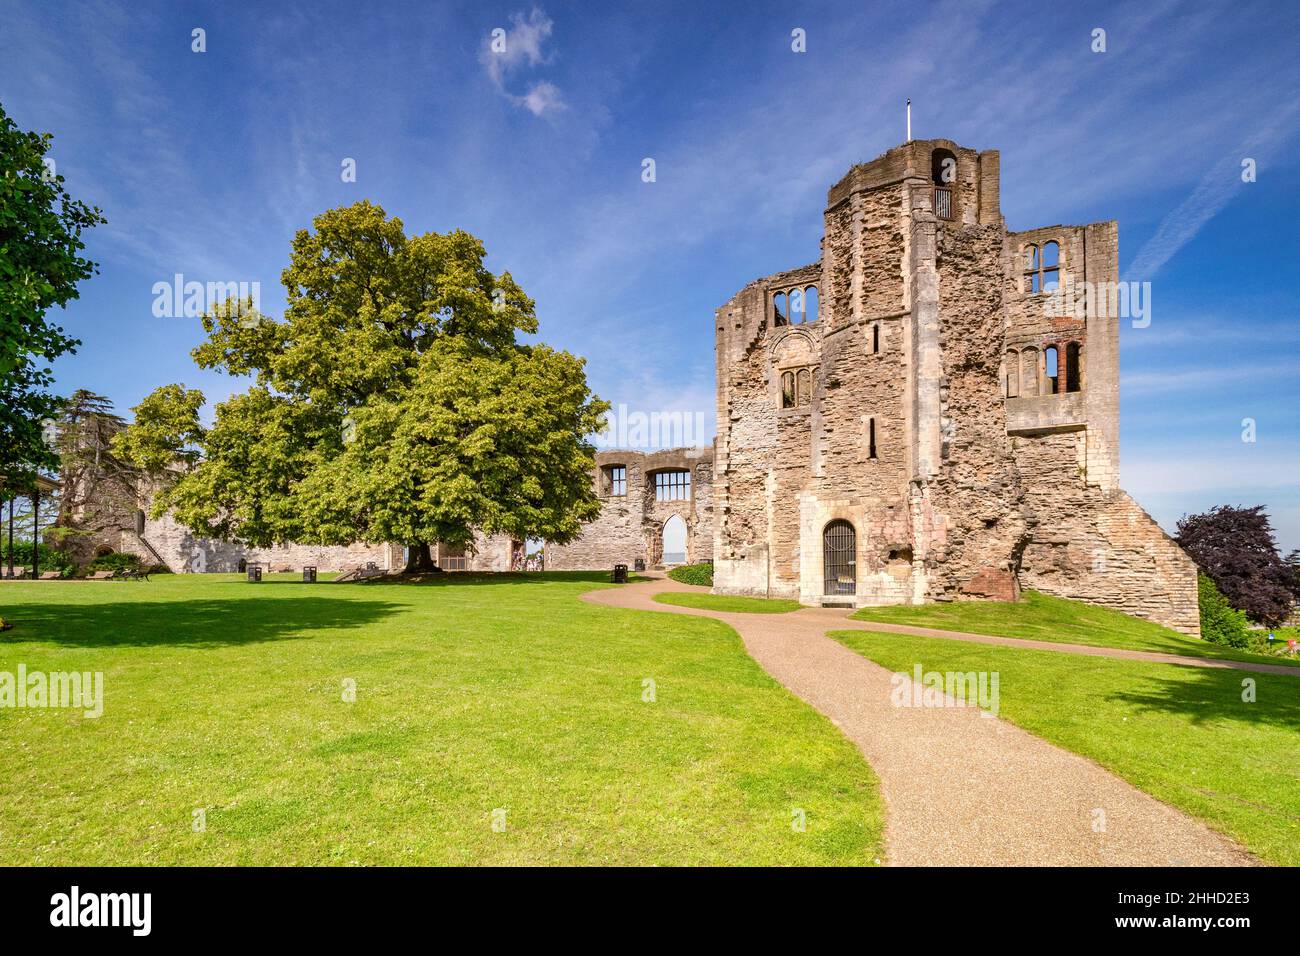 4 juillet 2019: Newark on Trent, Notinghamshire, Royaume-Uni - le château et le terrain, librement ouvert au public.Arbres verdoyants et pelouse verte. Banque D'Images